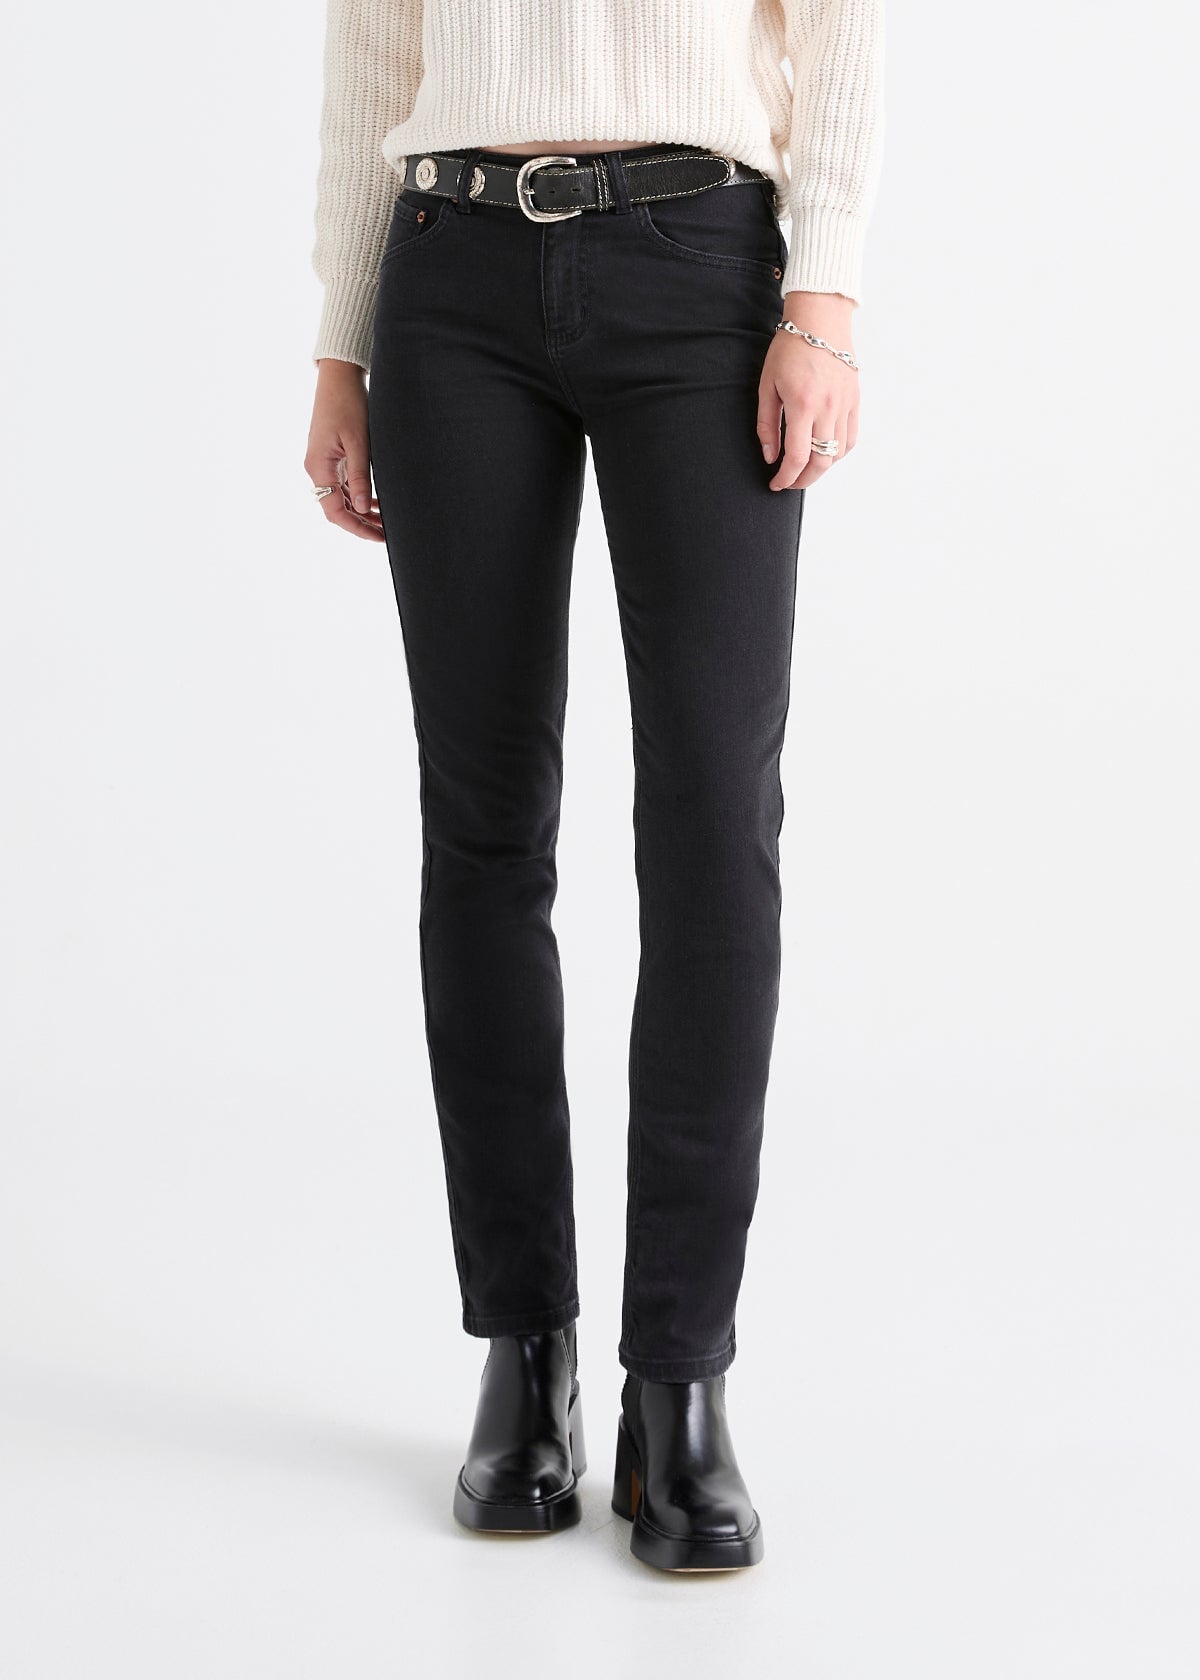 Jeans Feminino: Straight, Skinny, Slim e Mais